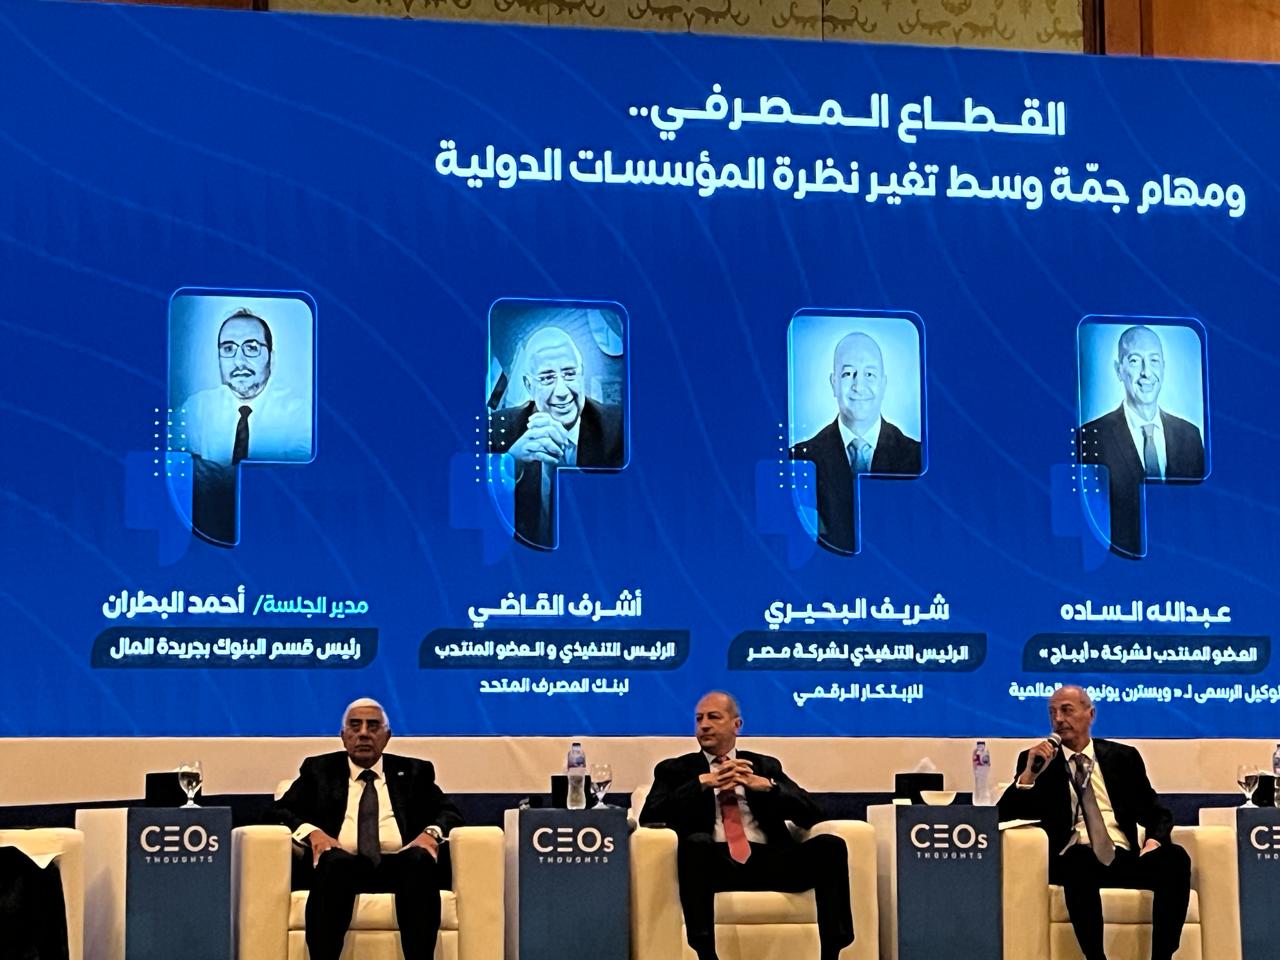 القاضي : البنوك المصرية ومنتجاتها الحالية والحلول الرقمية داعم كبير لتدفق الاستثمارات المحلية والعالمية  